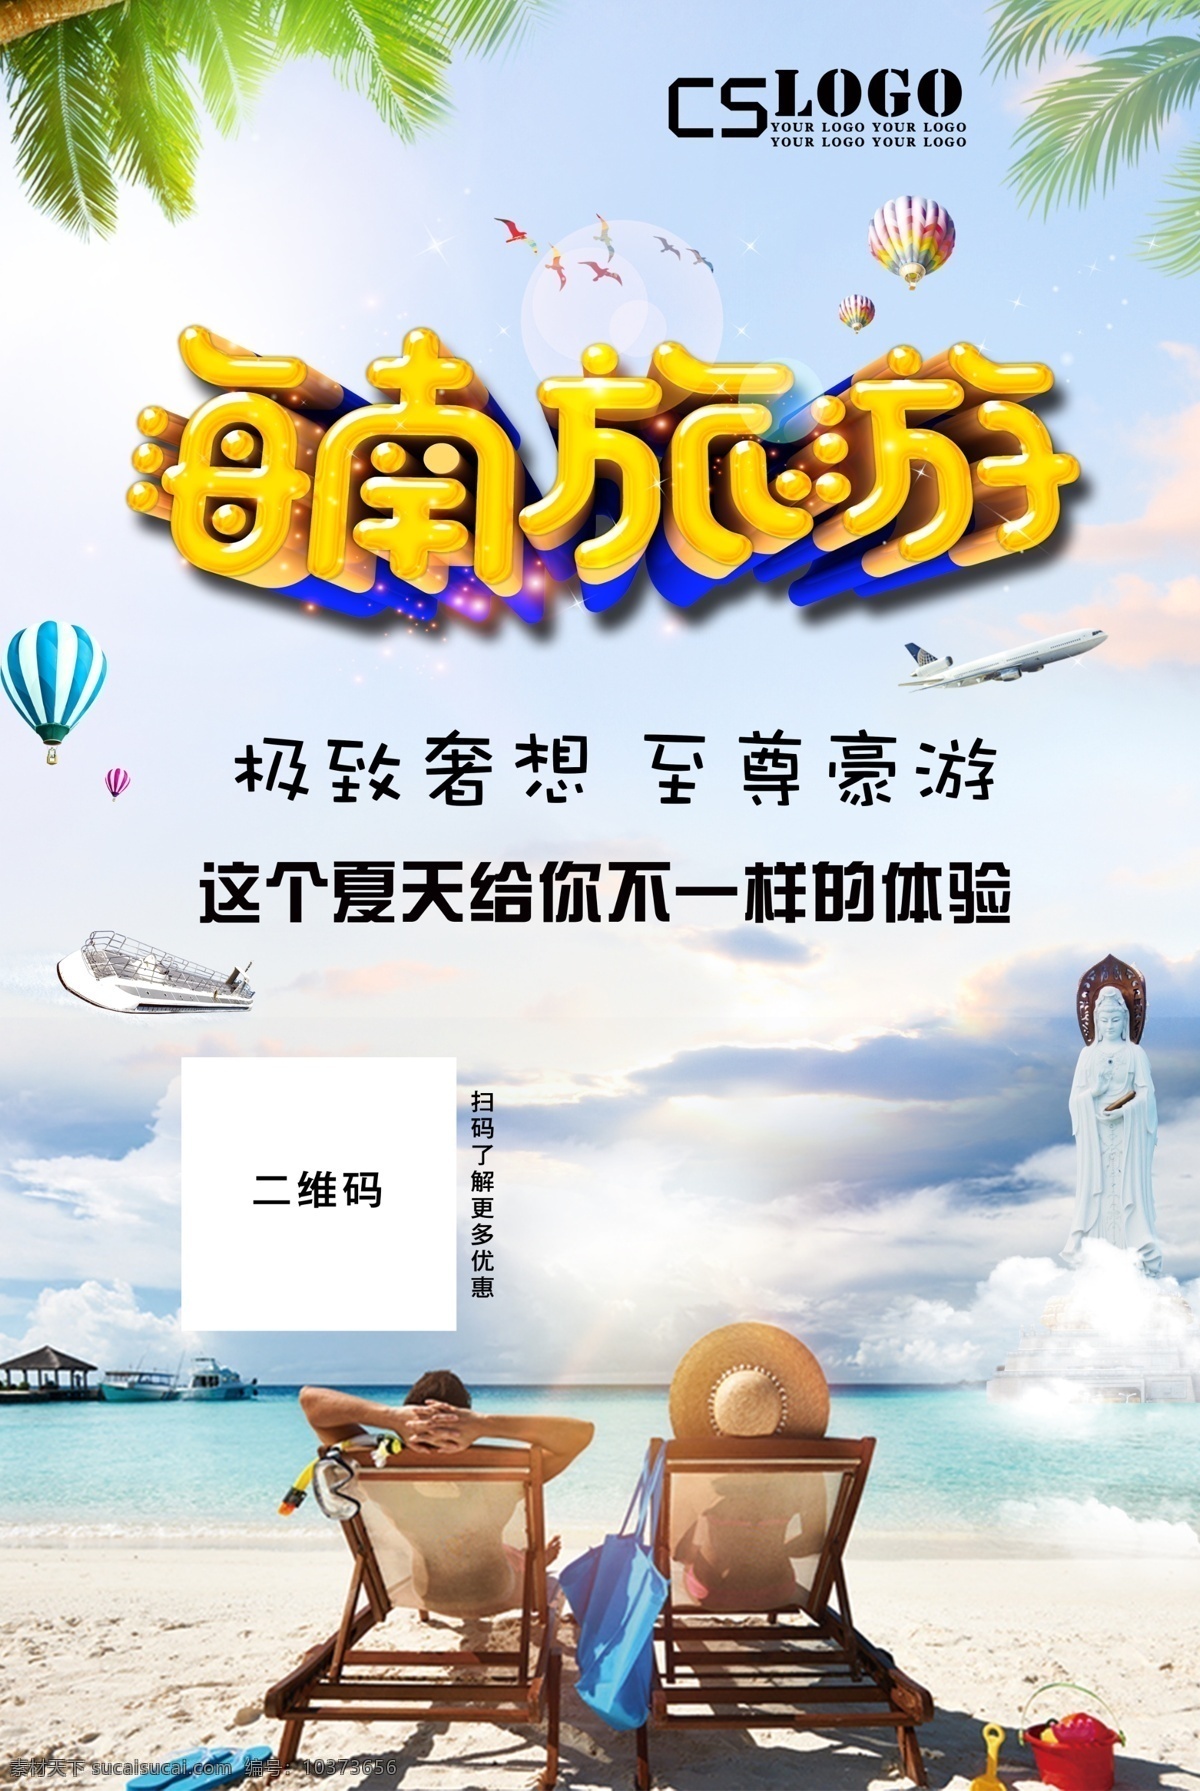 海南 清新 简约 旅游 海报 展板 海边 海岸 促销 酒店 三亚 海南旅游 沙滩风光 夏天 旅游海报设计